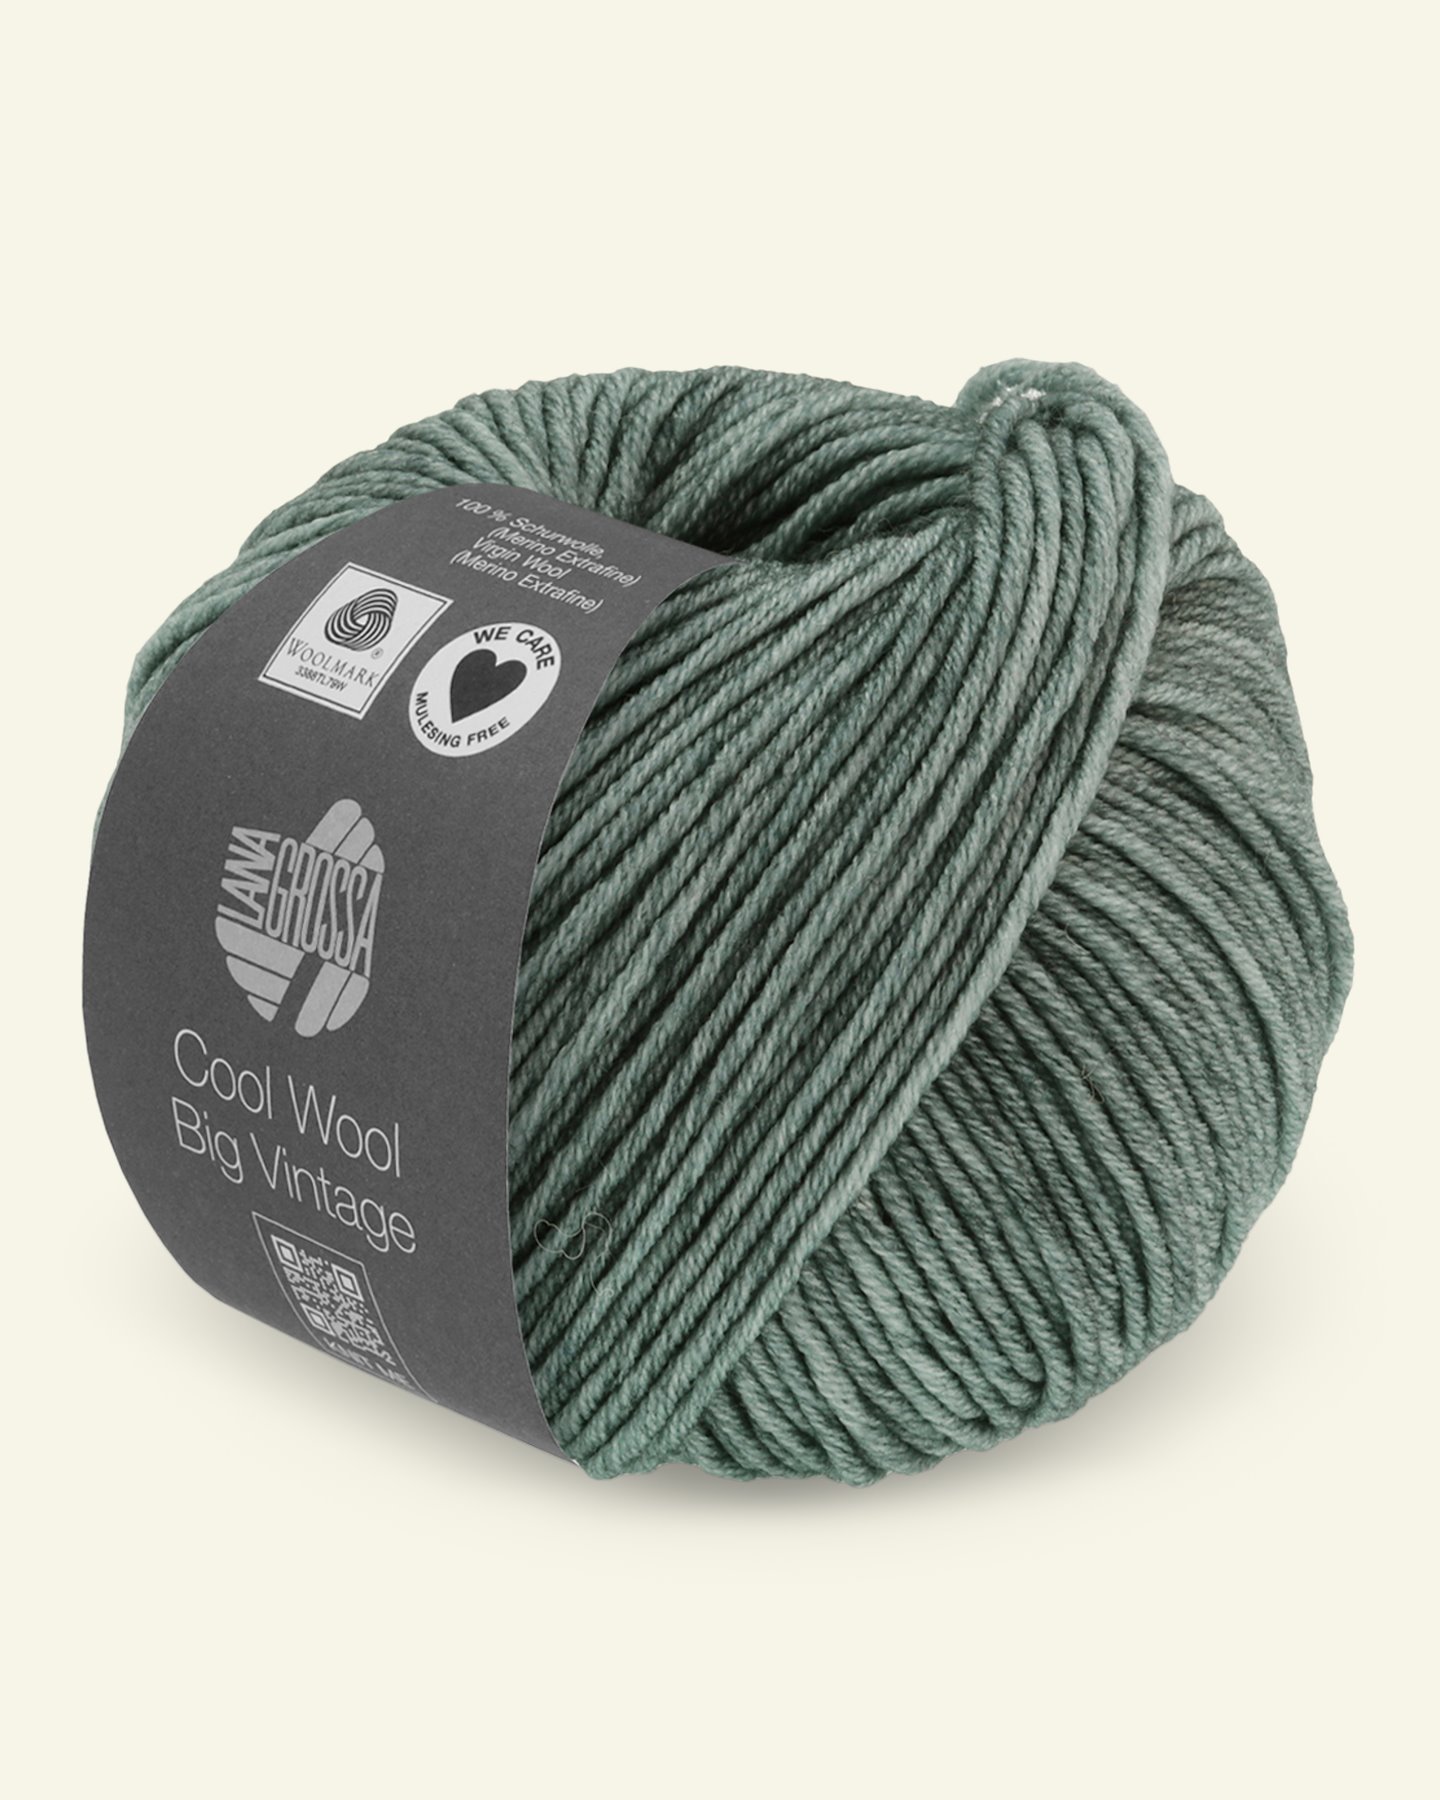 Lana Grossa, Extra feine Merinowolle Garn "Cool Wool Big Vintage", Grüngrau 90001072_pack